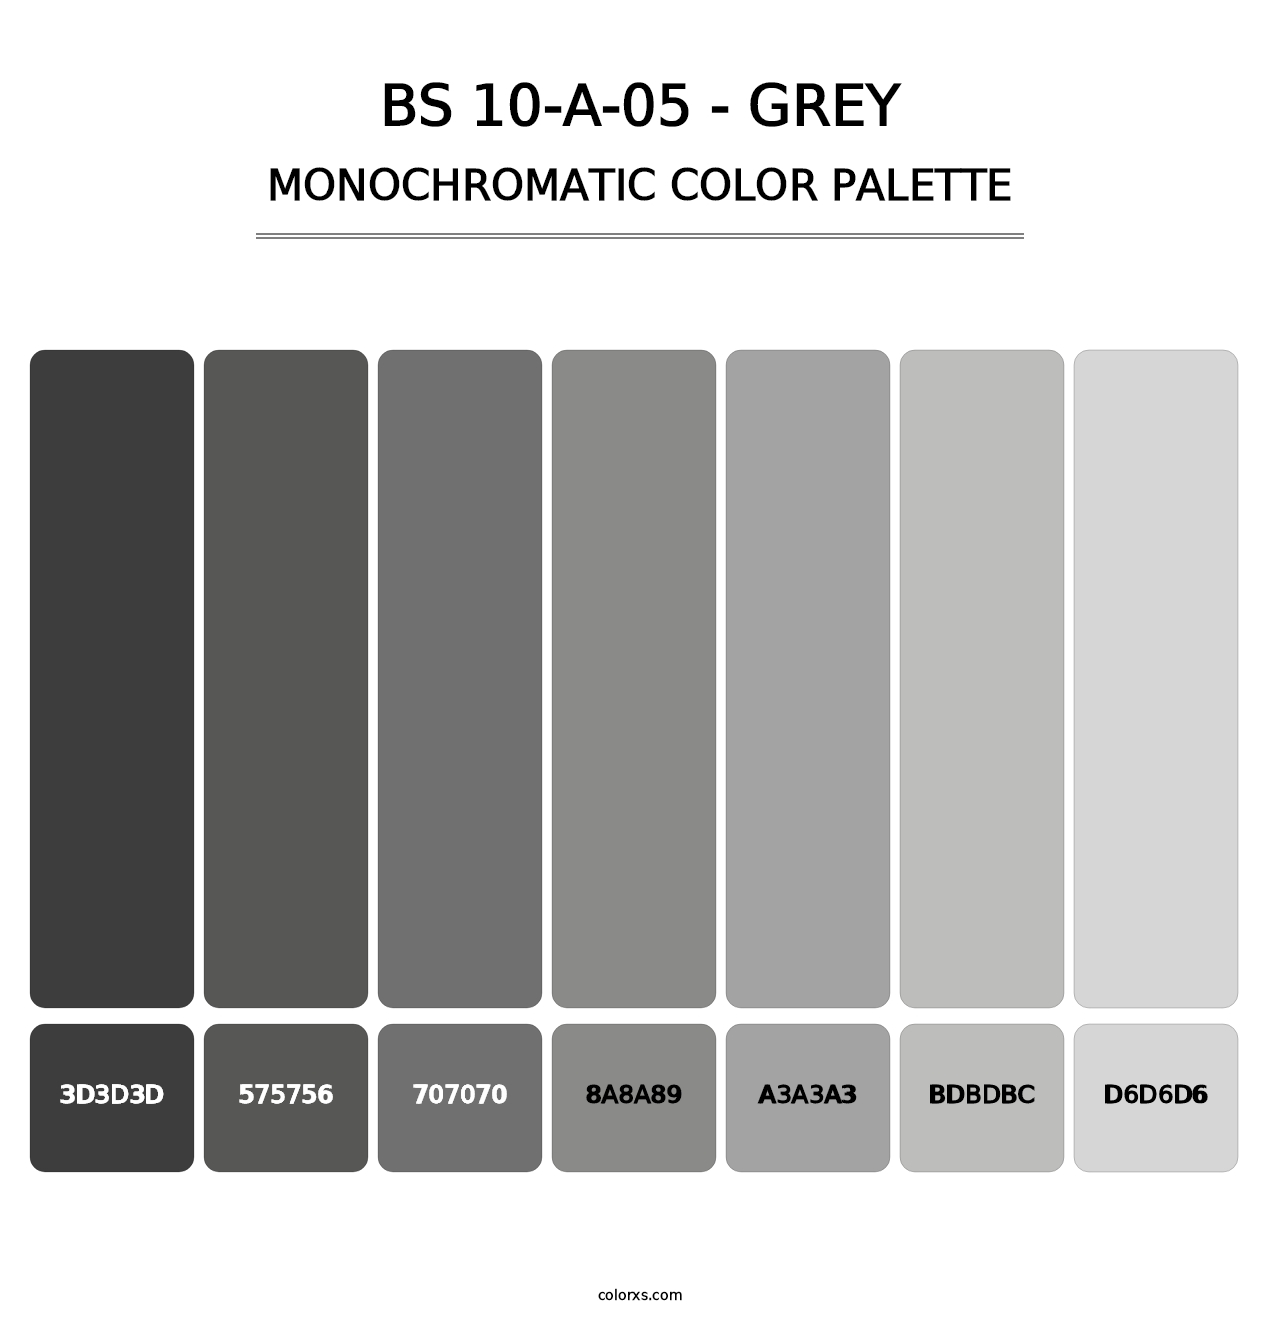 BS 10-A-05 - Grey - Monochromatic Color Palette